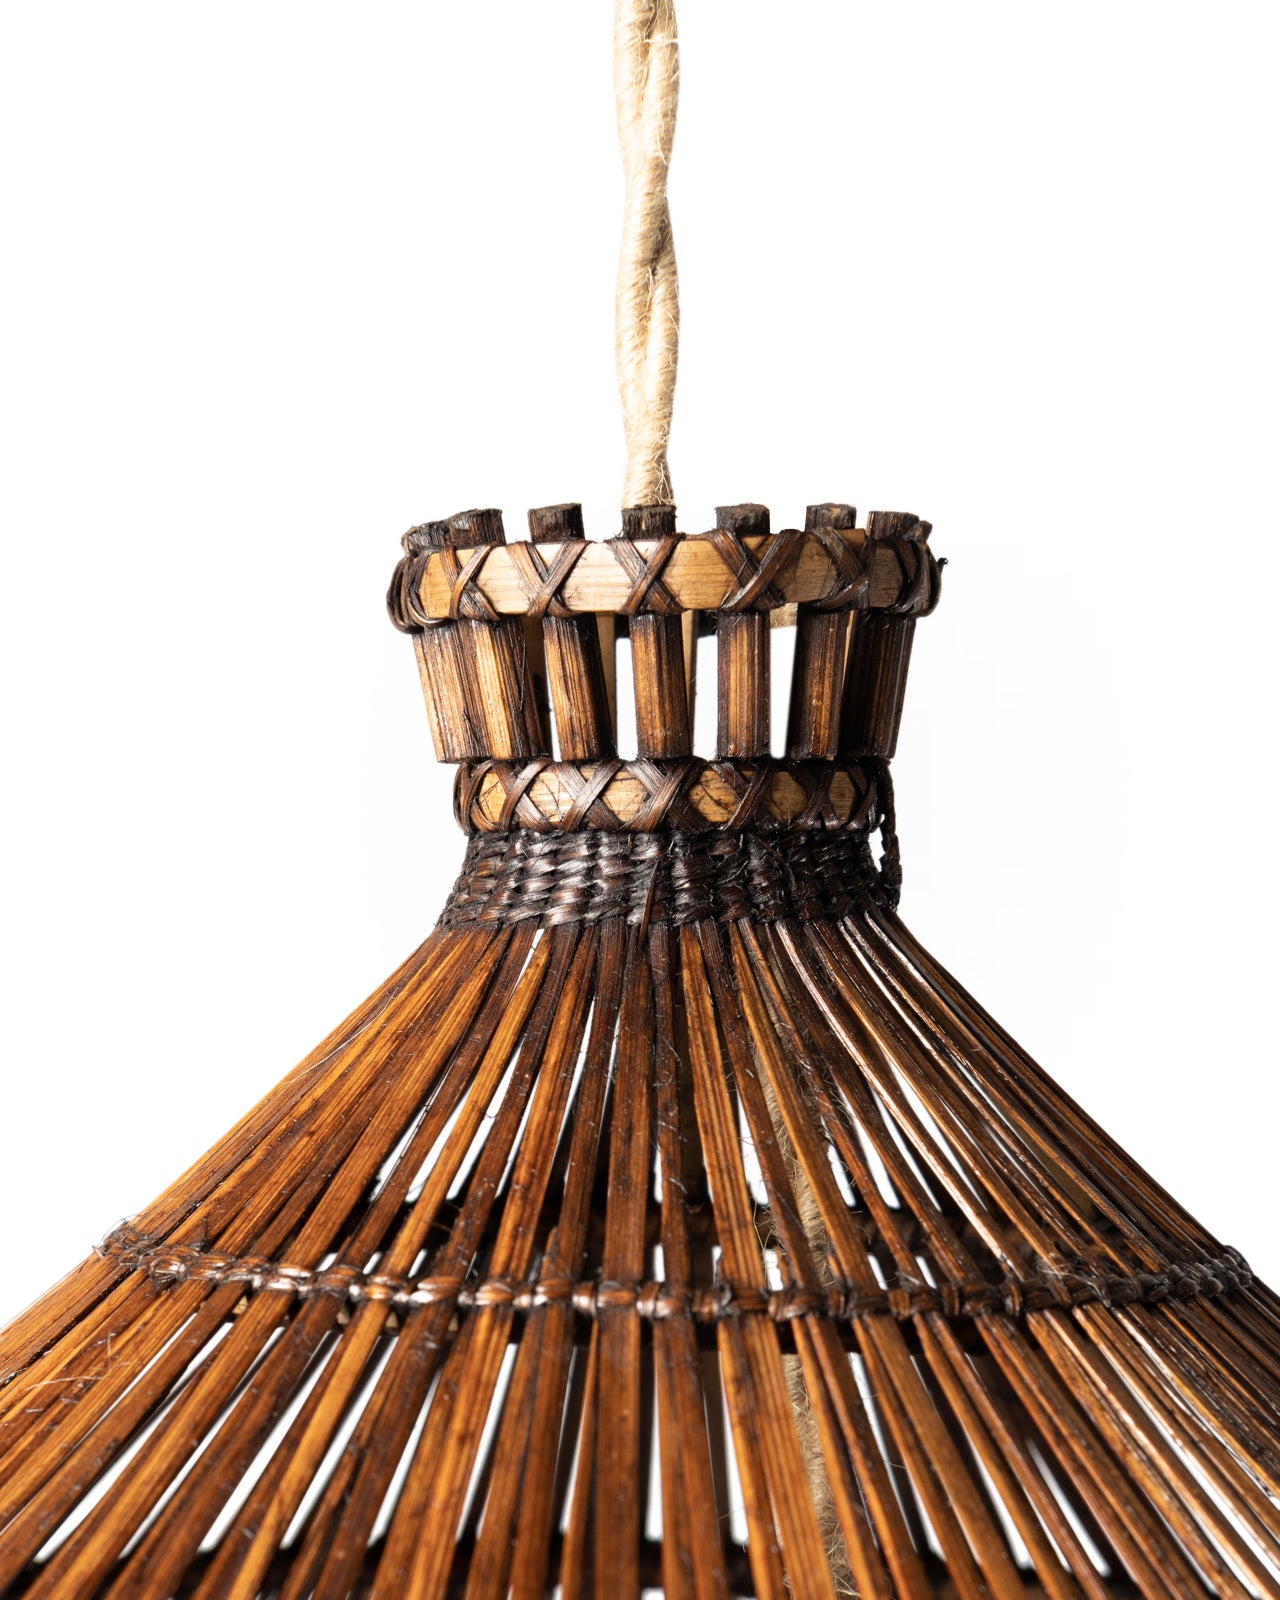 Lámpara Grande colgante de techo de ratán natural Salatiga, hecha a mano con acabado oscuro, altura 76 cm diámetro 80 cm, origen Indonesia